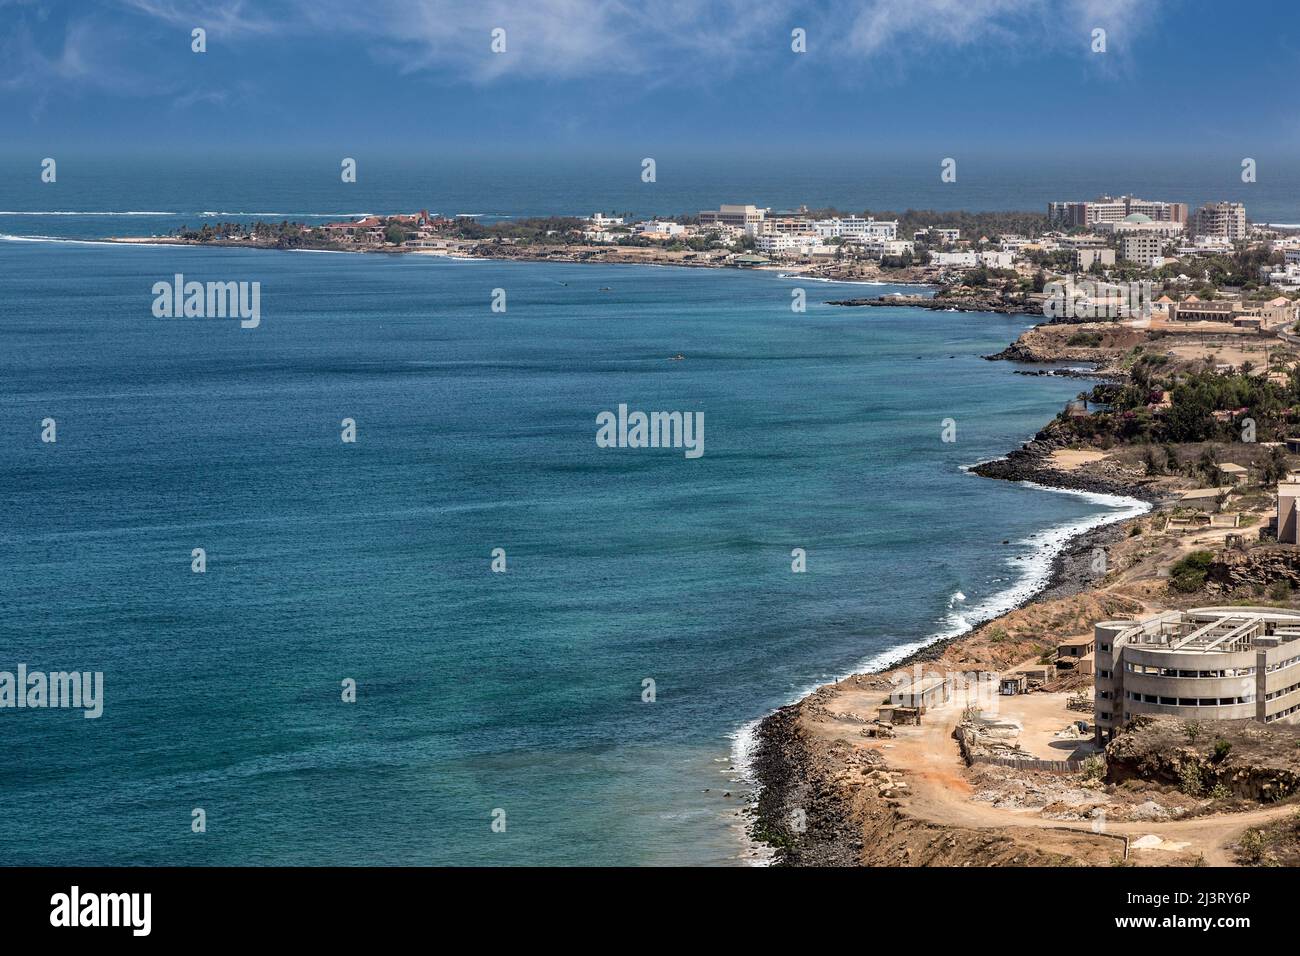 Dakar, Sénégal. Les Almadies, une banlieue de Dakar. Le point le plus à l'ouest du continent africain se trouve à l'extrême gauche. Banque D'Images